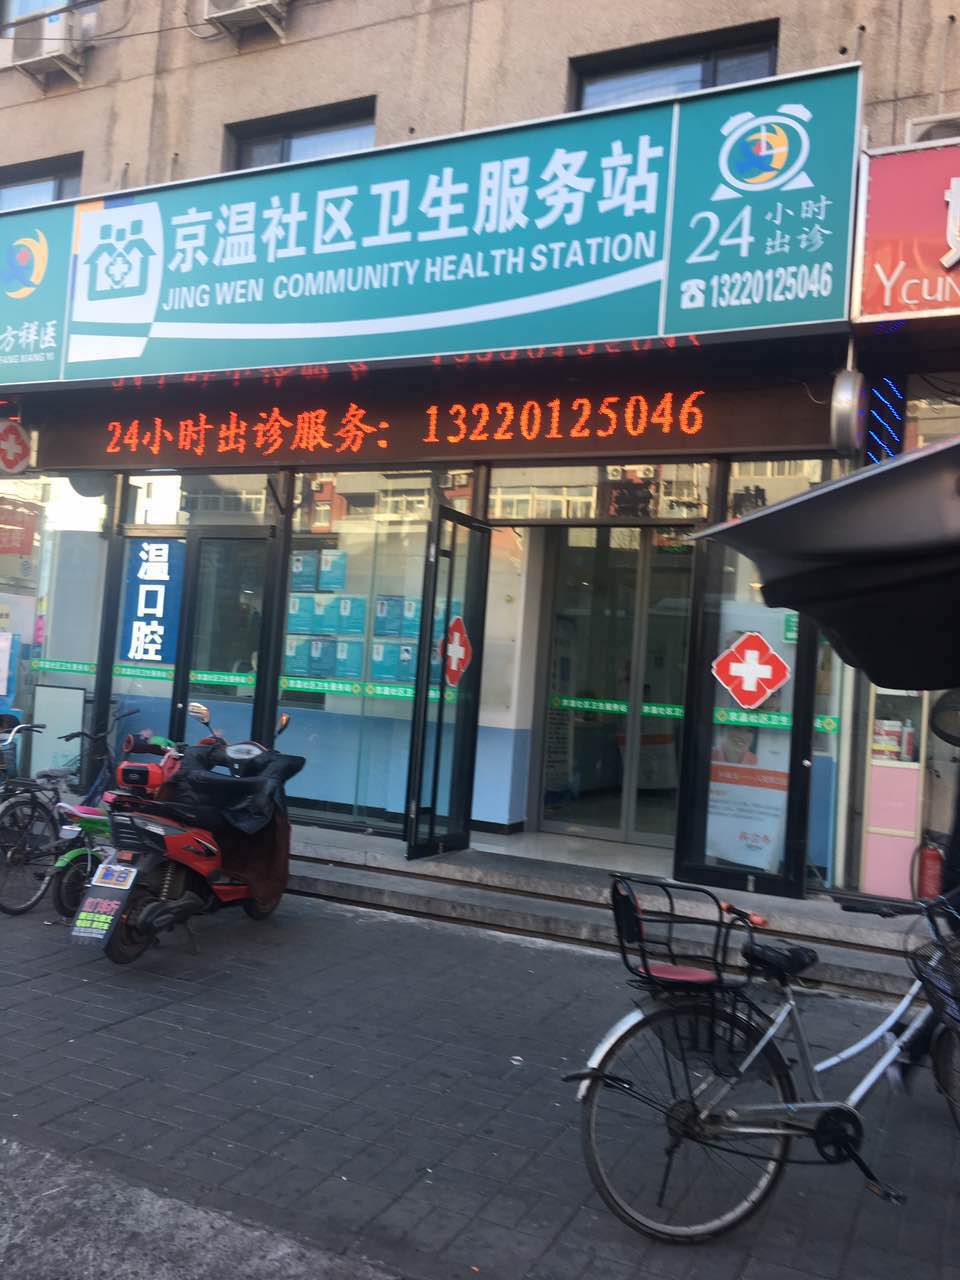 北京一卫生站儿童综合评价系统已安装1